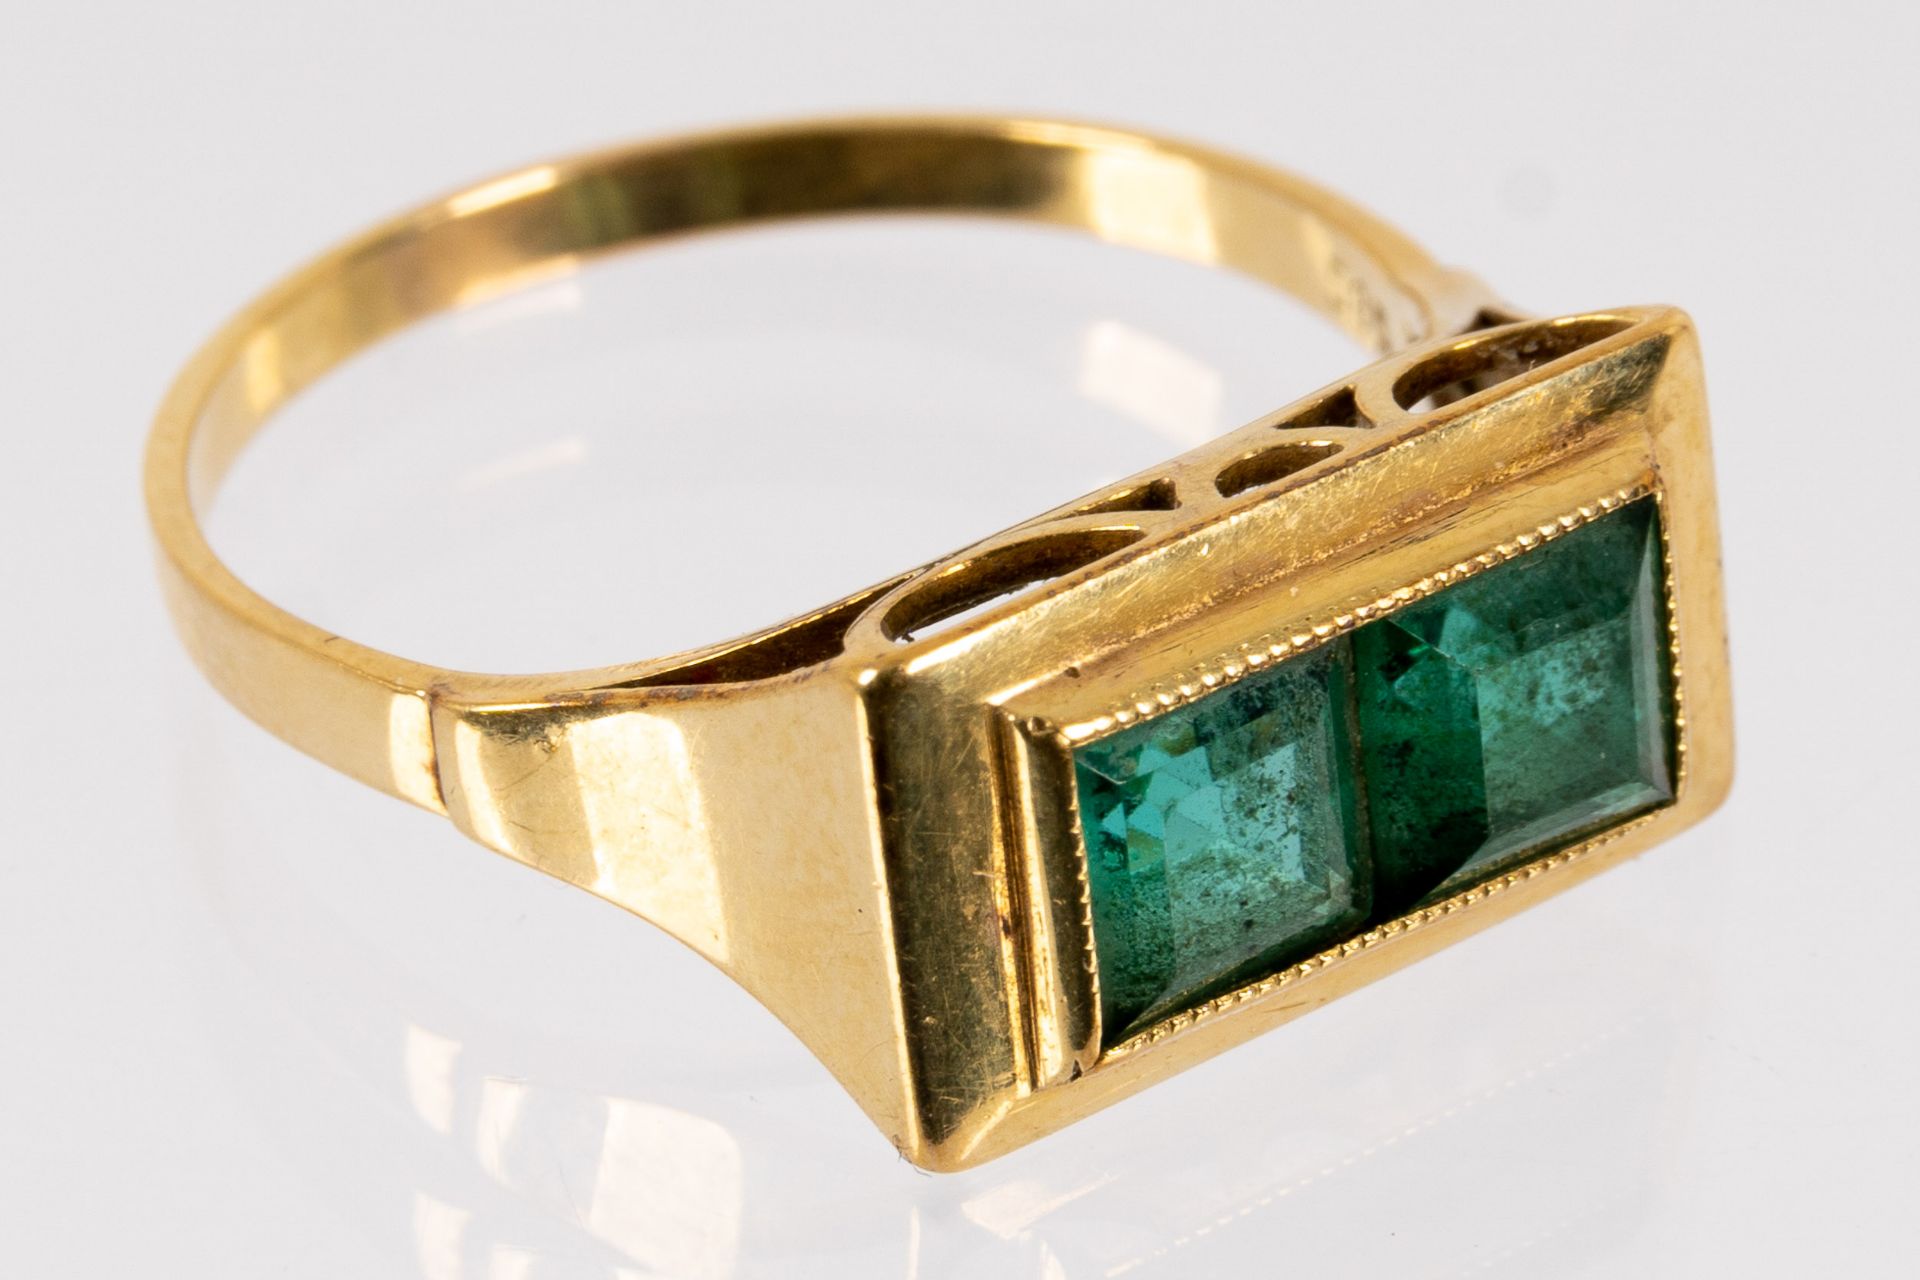 585er Gelbgold-Unisex-Ring mit grünem Farbsteinbesatz, ca. 2,5 gr. brutto, Ringinnendurchmesser ca.